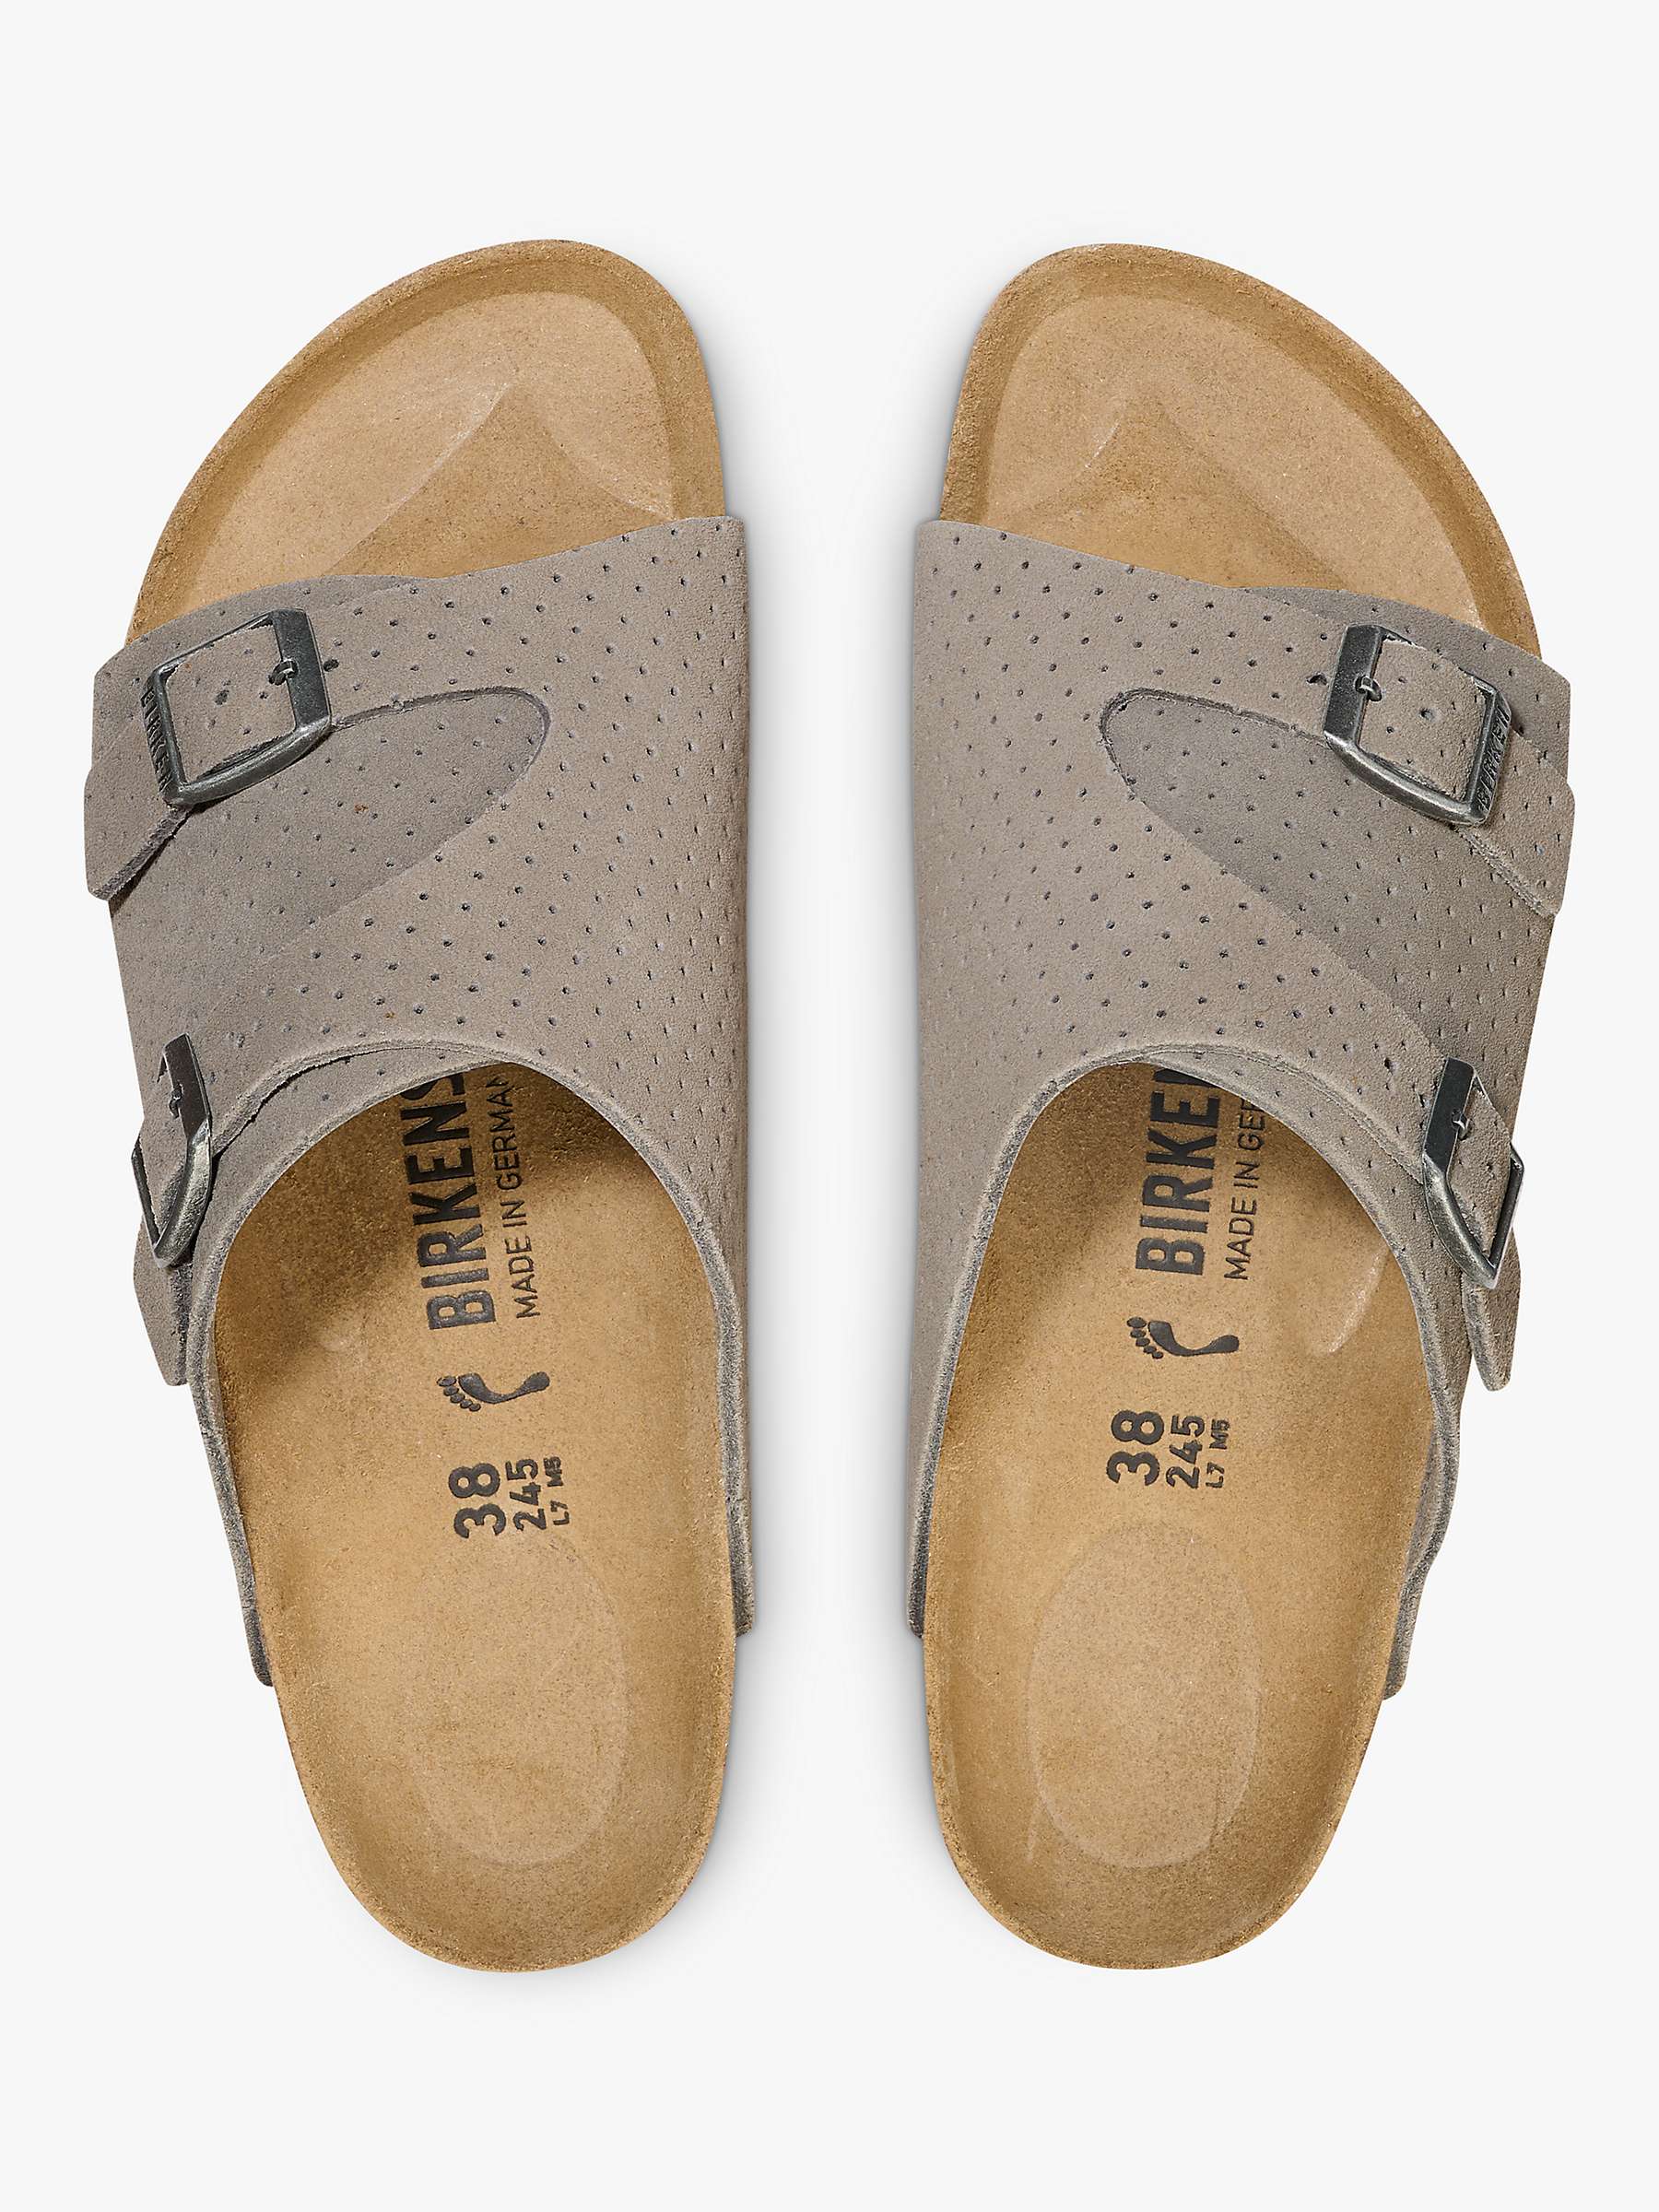 Buy Birkenstock Zurich Dotted Suede Sandals, Grey Online at johnlewis.com